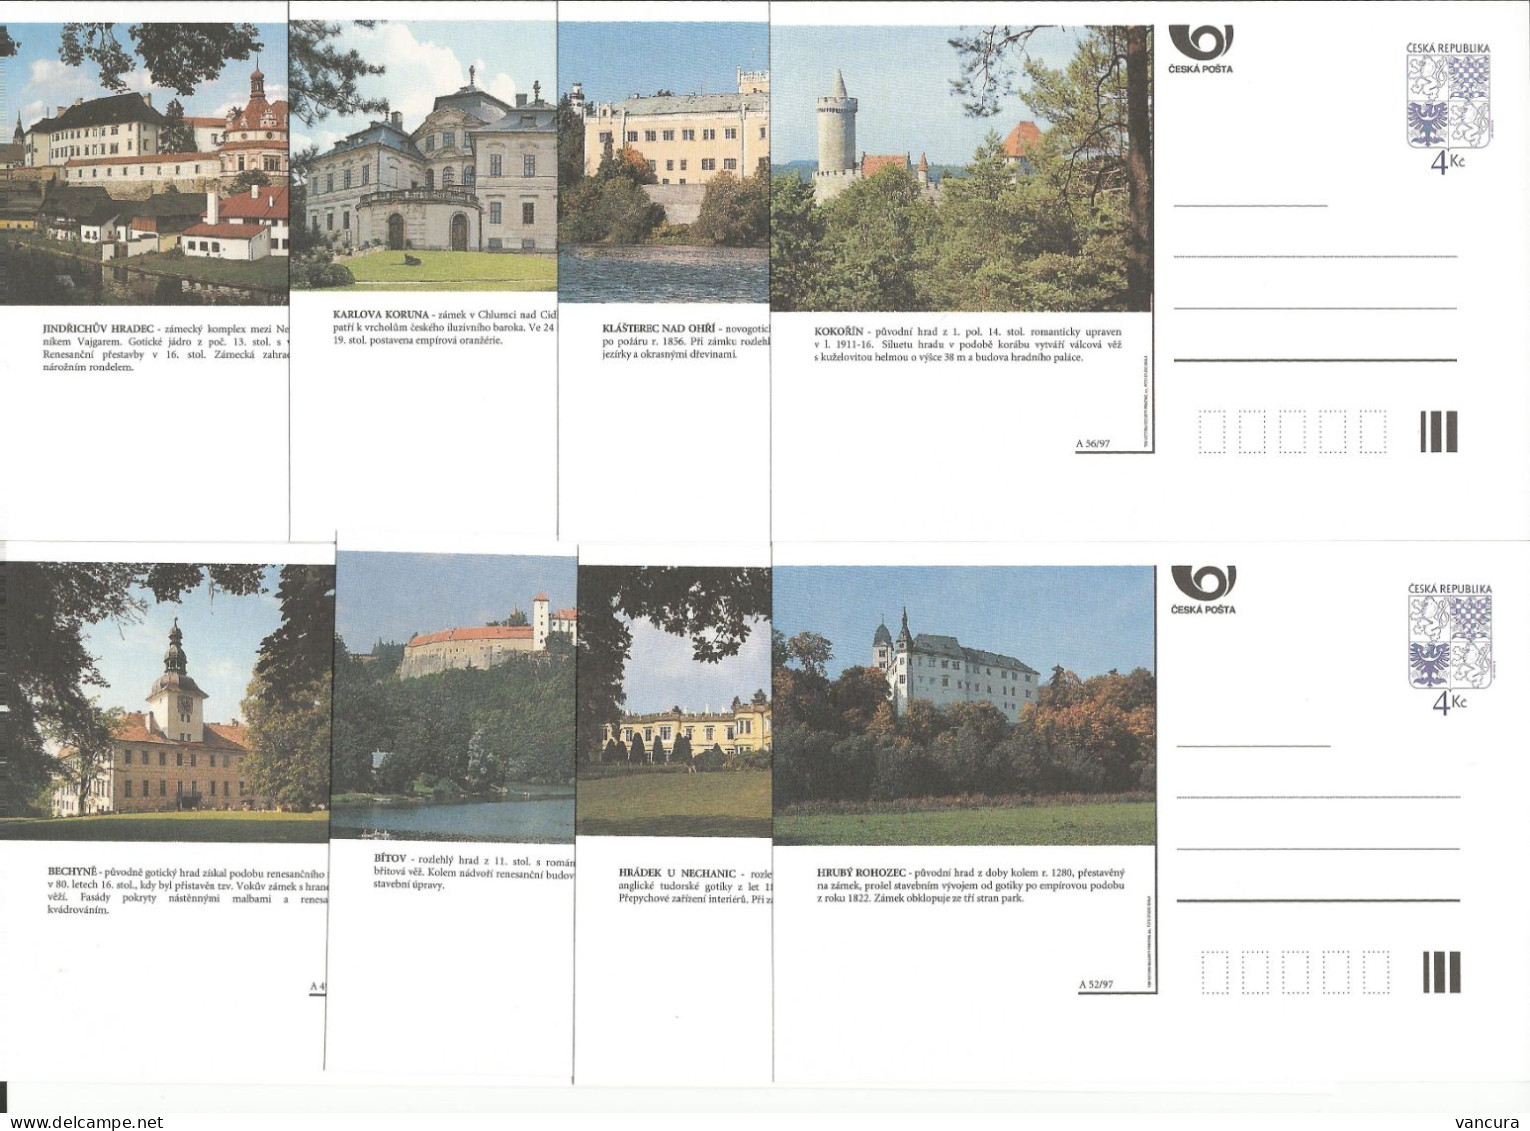 CDV 25 A - Czech Republic Castles And Mansions 1997 - Schlösser U. Burgen